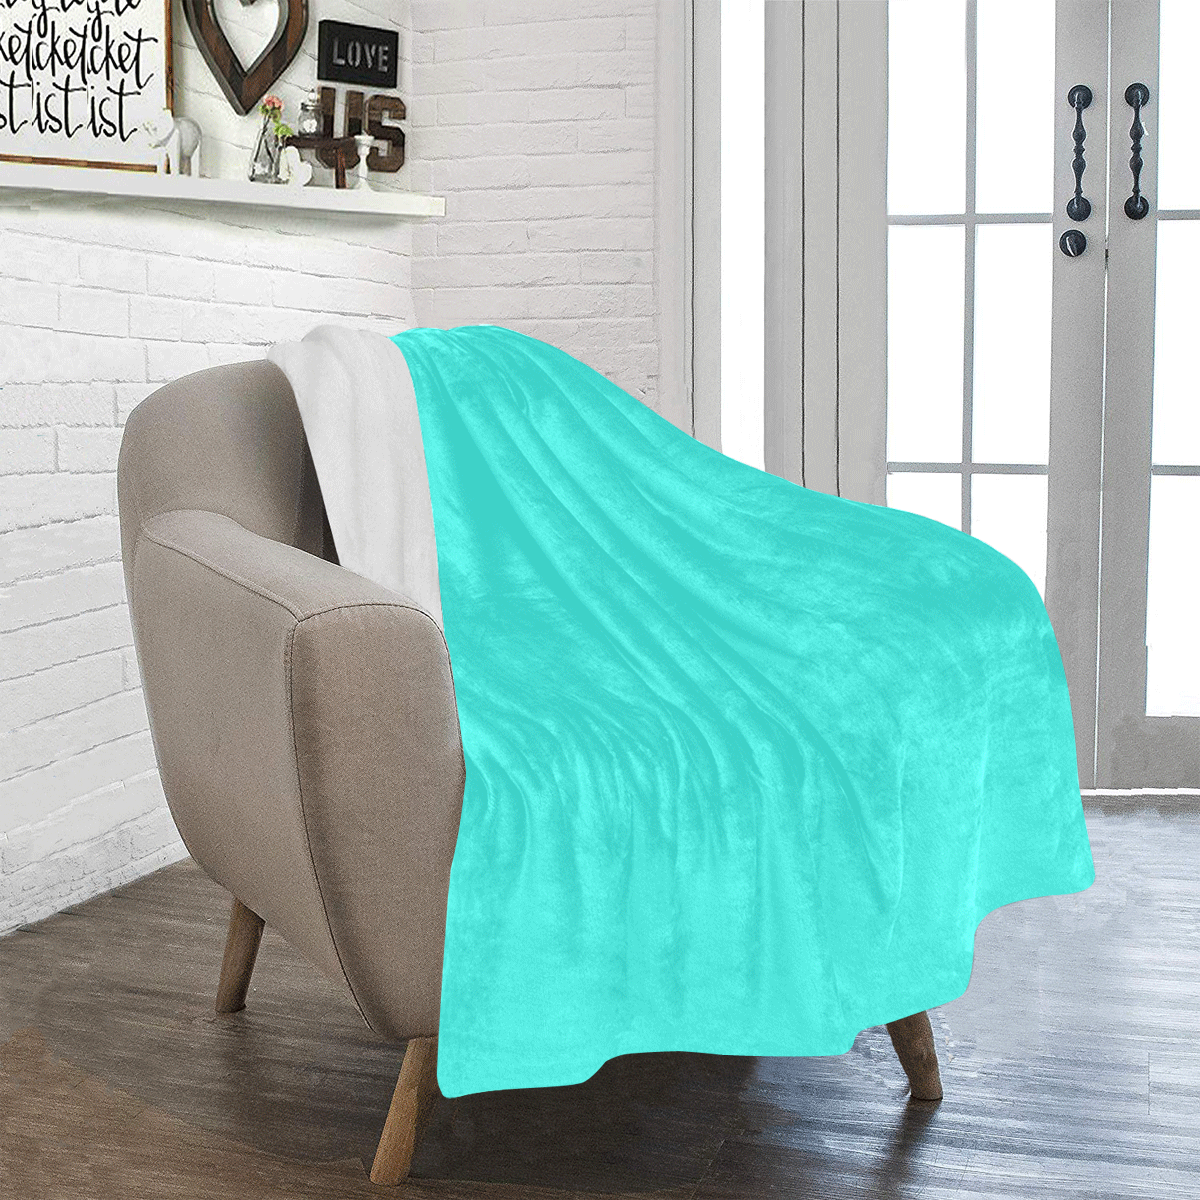 Neon Turquoise Ultra-Soft Micro Fleece Blanket 40"x50"